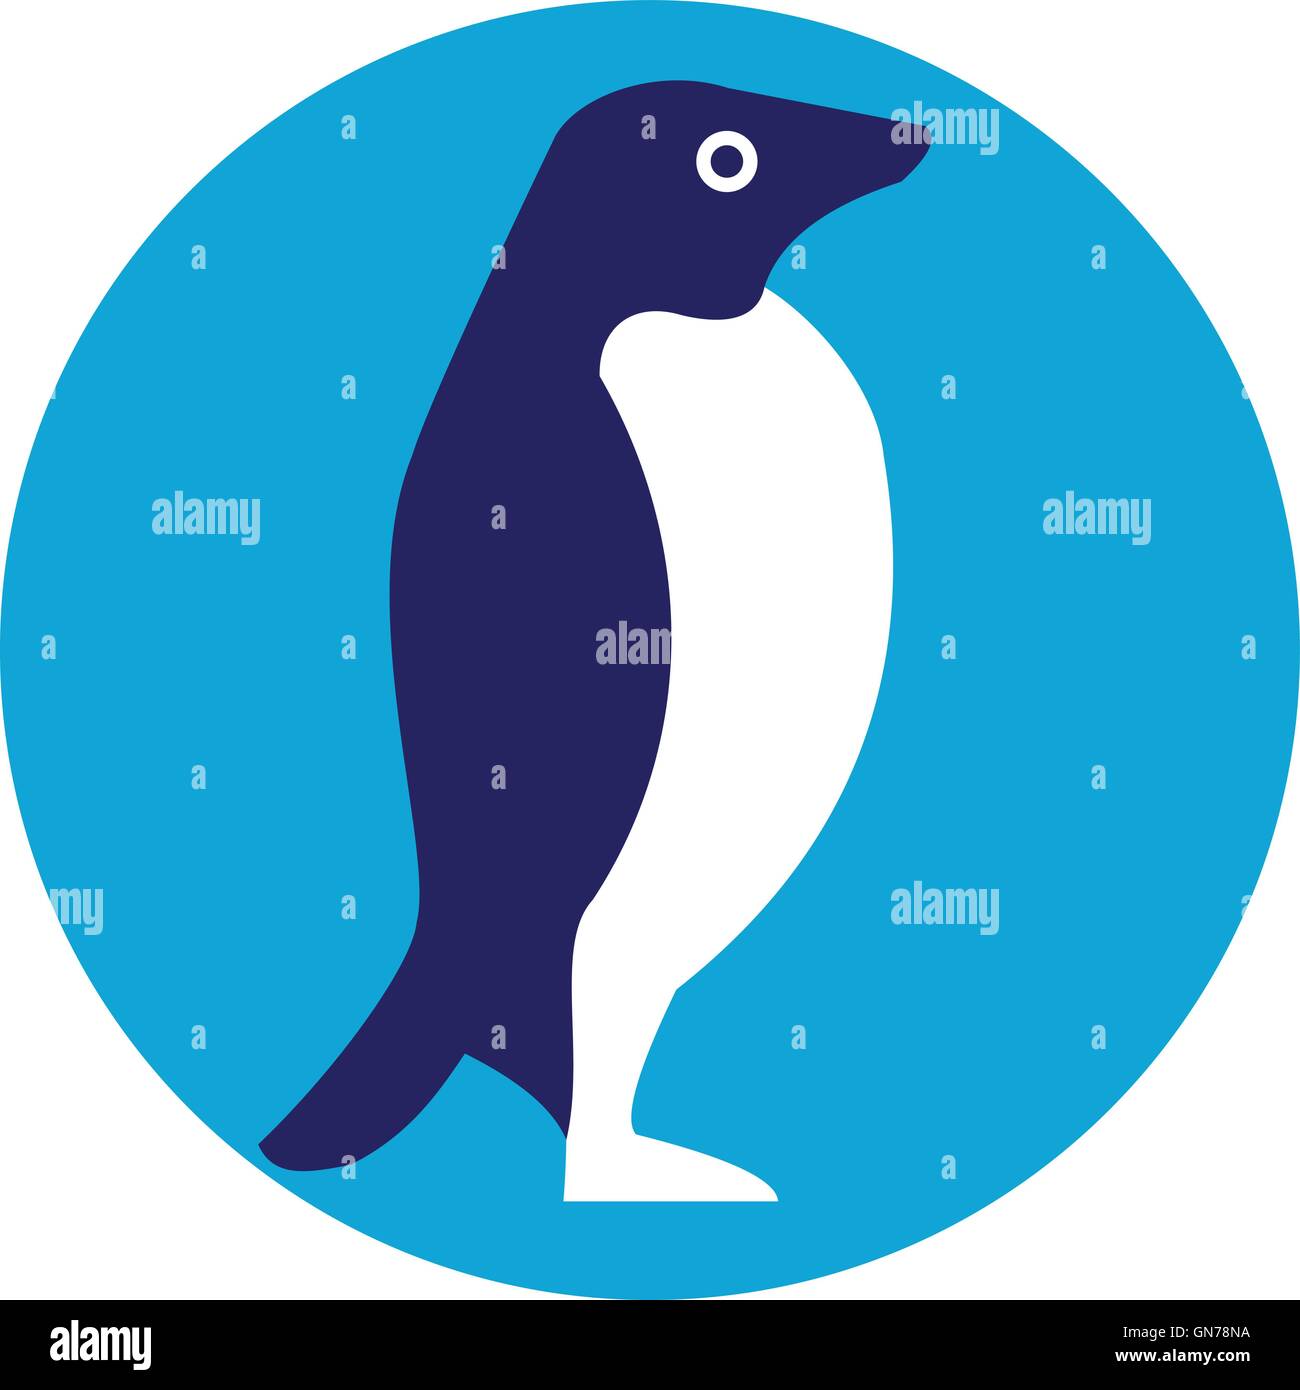 Illustrazione di un Adelie penguin o Pygoscelis adeliae, una specie di pinguino comuni lungo tutta la costa dell'Antartico visto dal lato impostato all'interno del cerchio fatto in stile retrò. Illustrazione Vettoriale